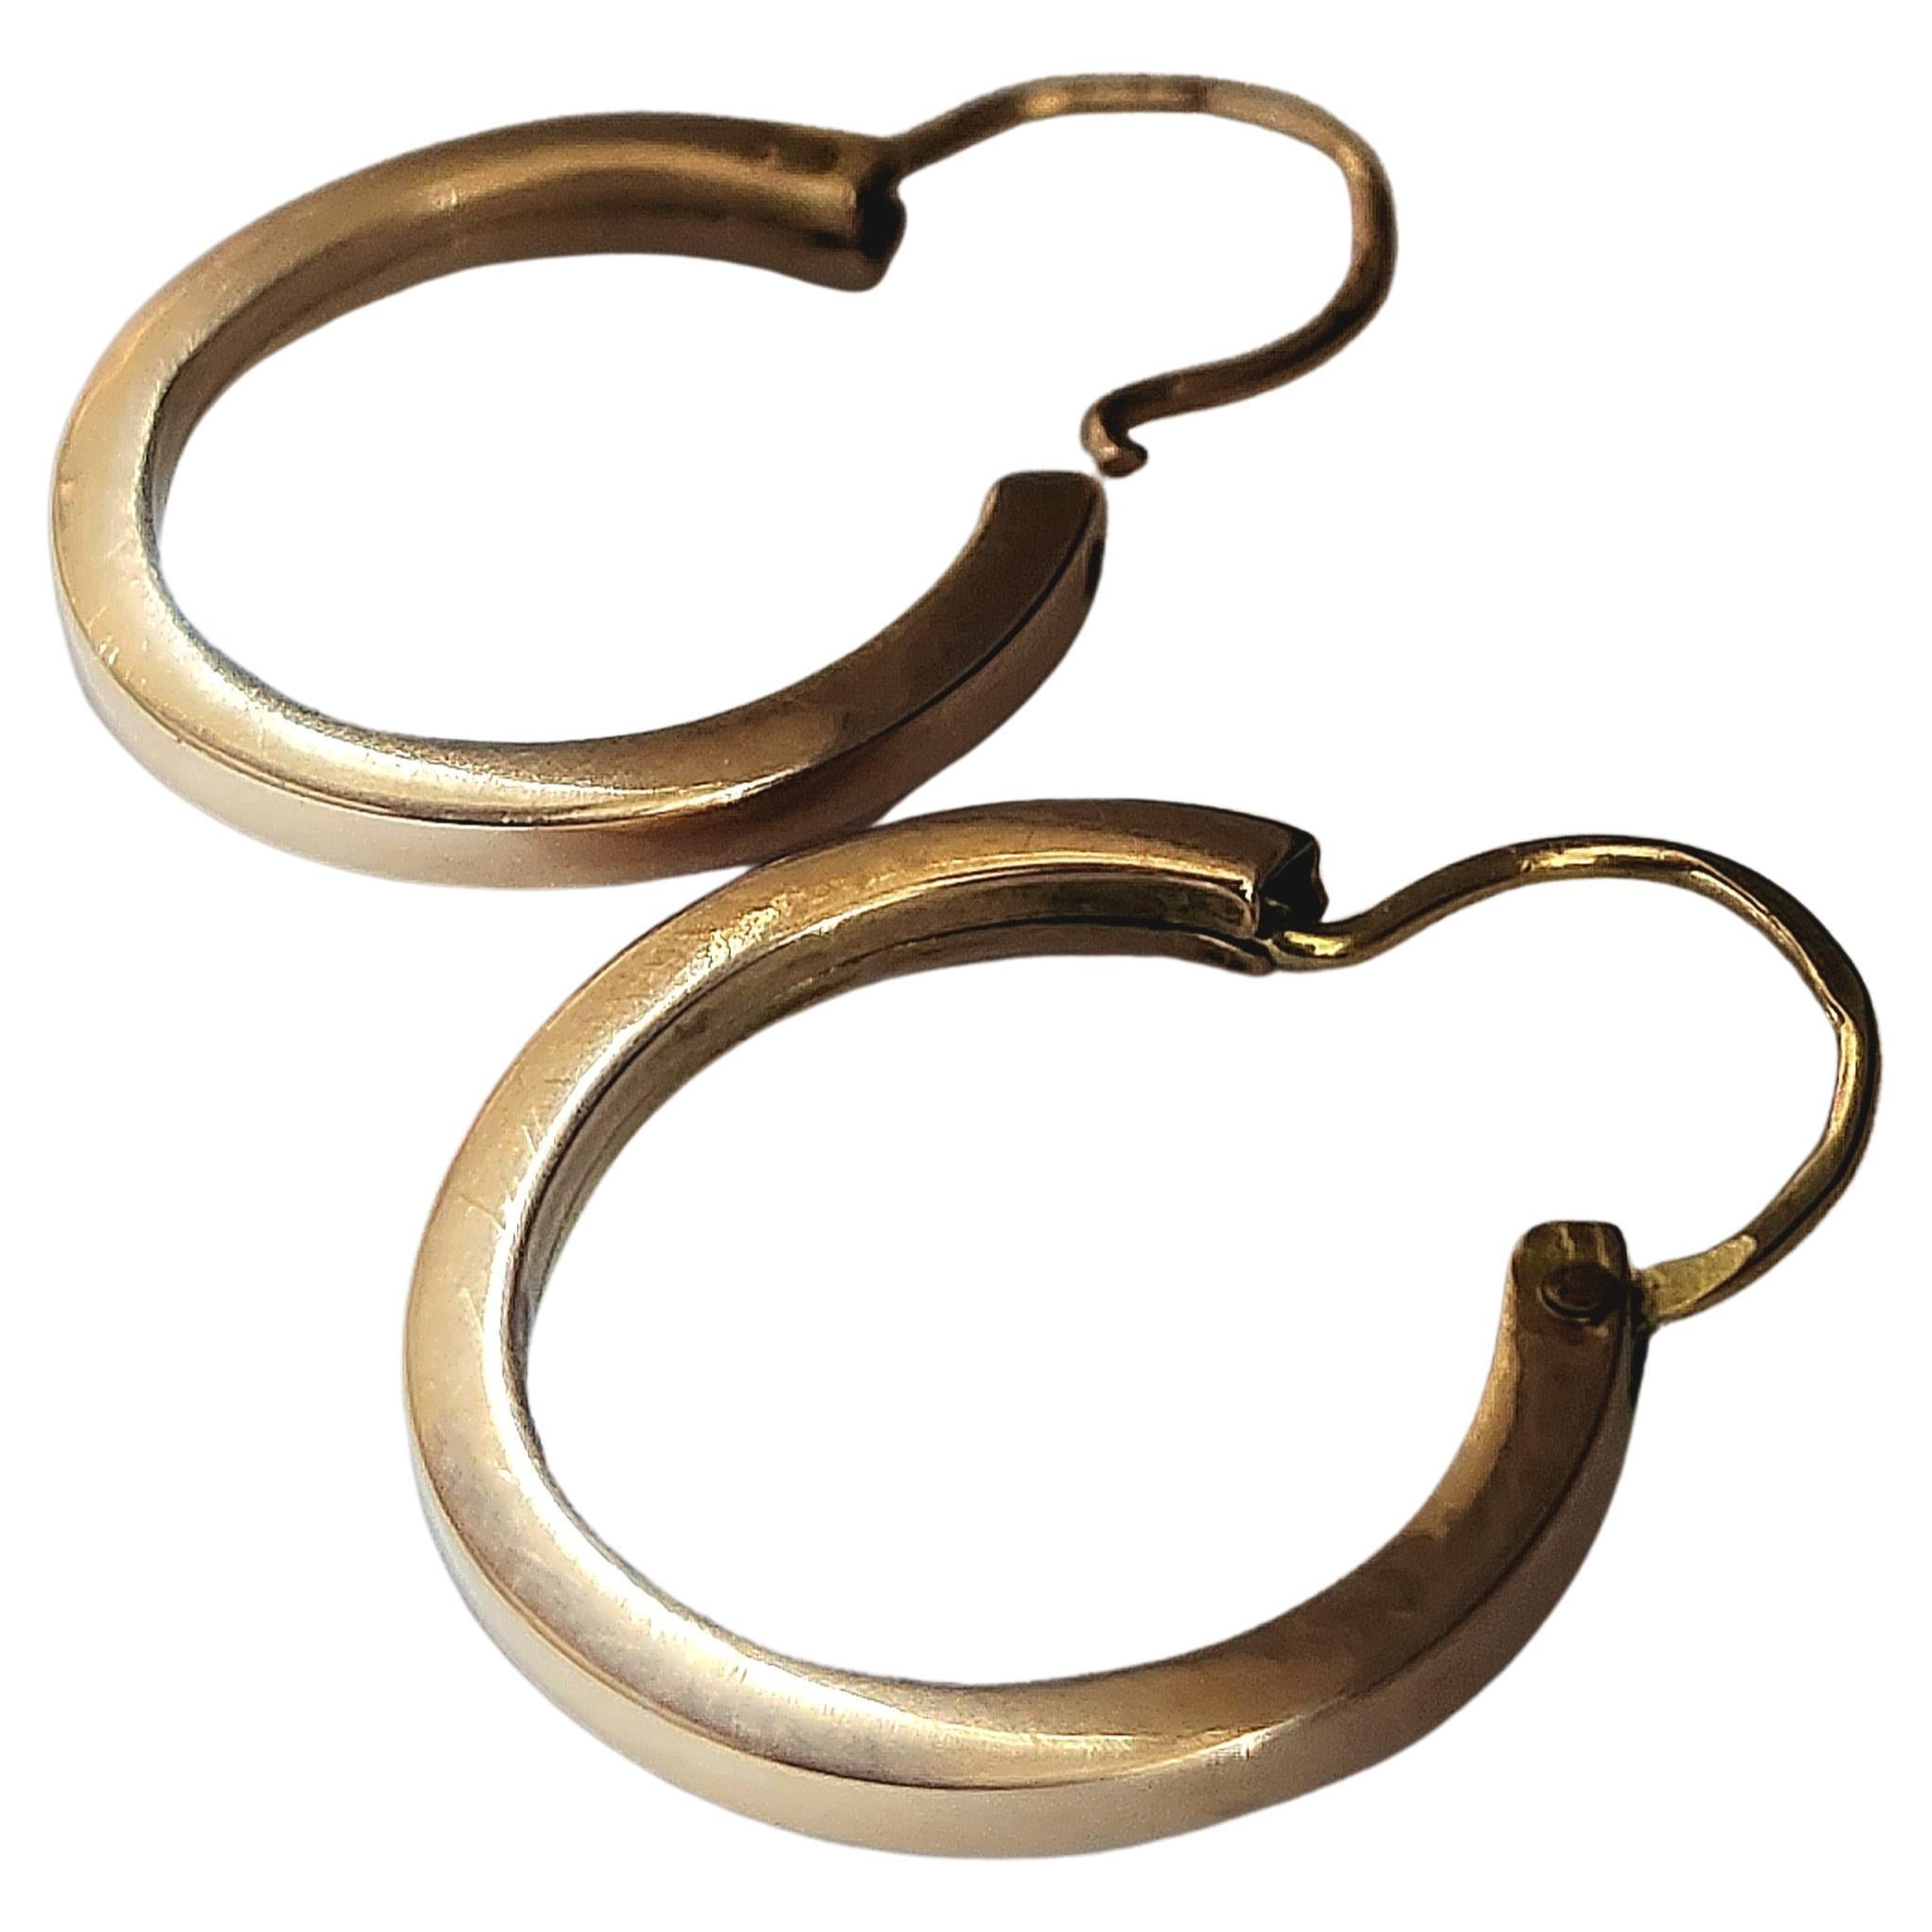 Seltene Antike 14k Gold Ohrringe in Moskau während der russischen Zarenzeit 1907/1910.c Halle markiert 56 kaiserlichen russischen Gold-Standard und Moskau Assay Marke insgesamt Ohrring Länge 2,5cm 